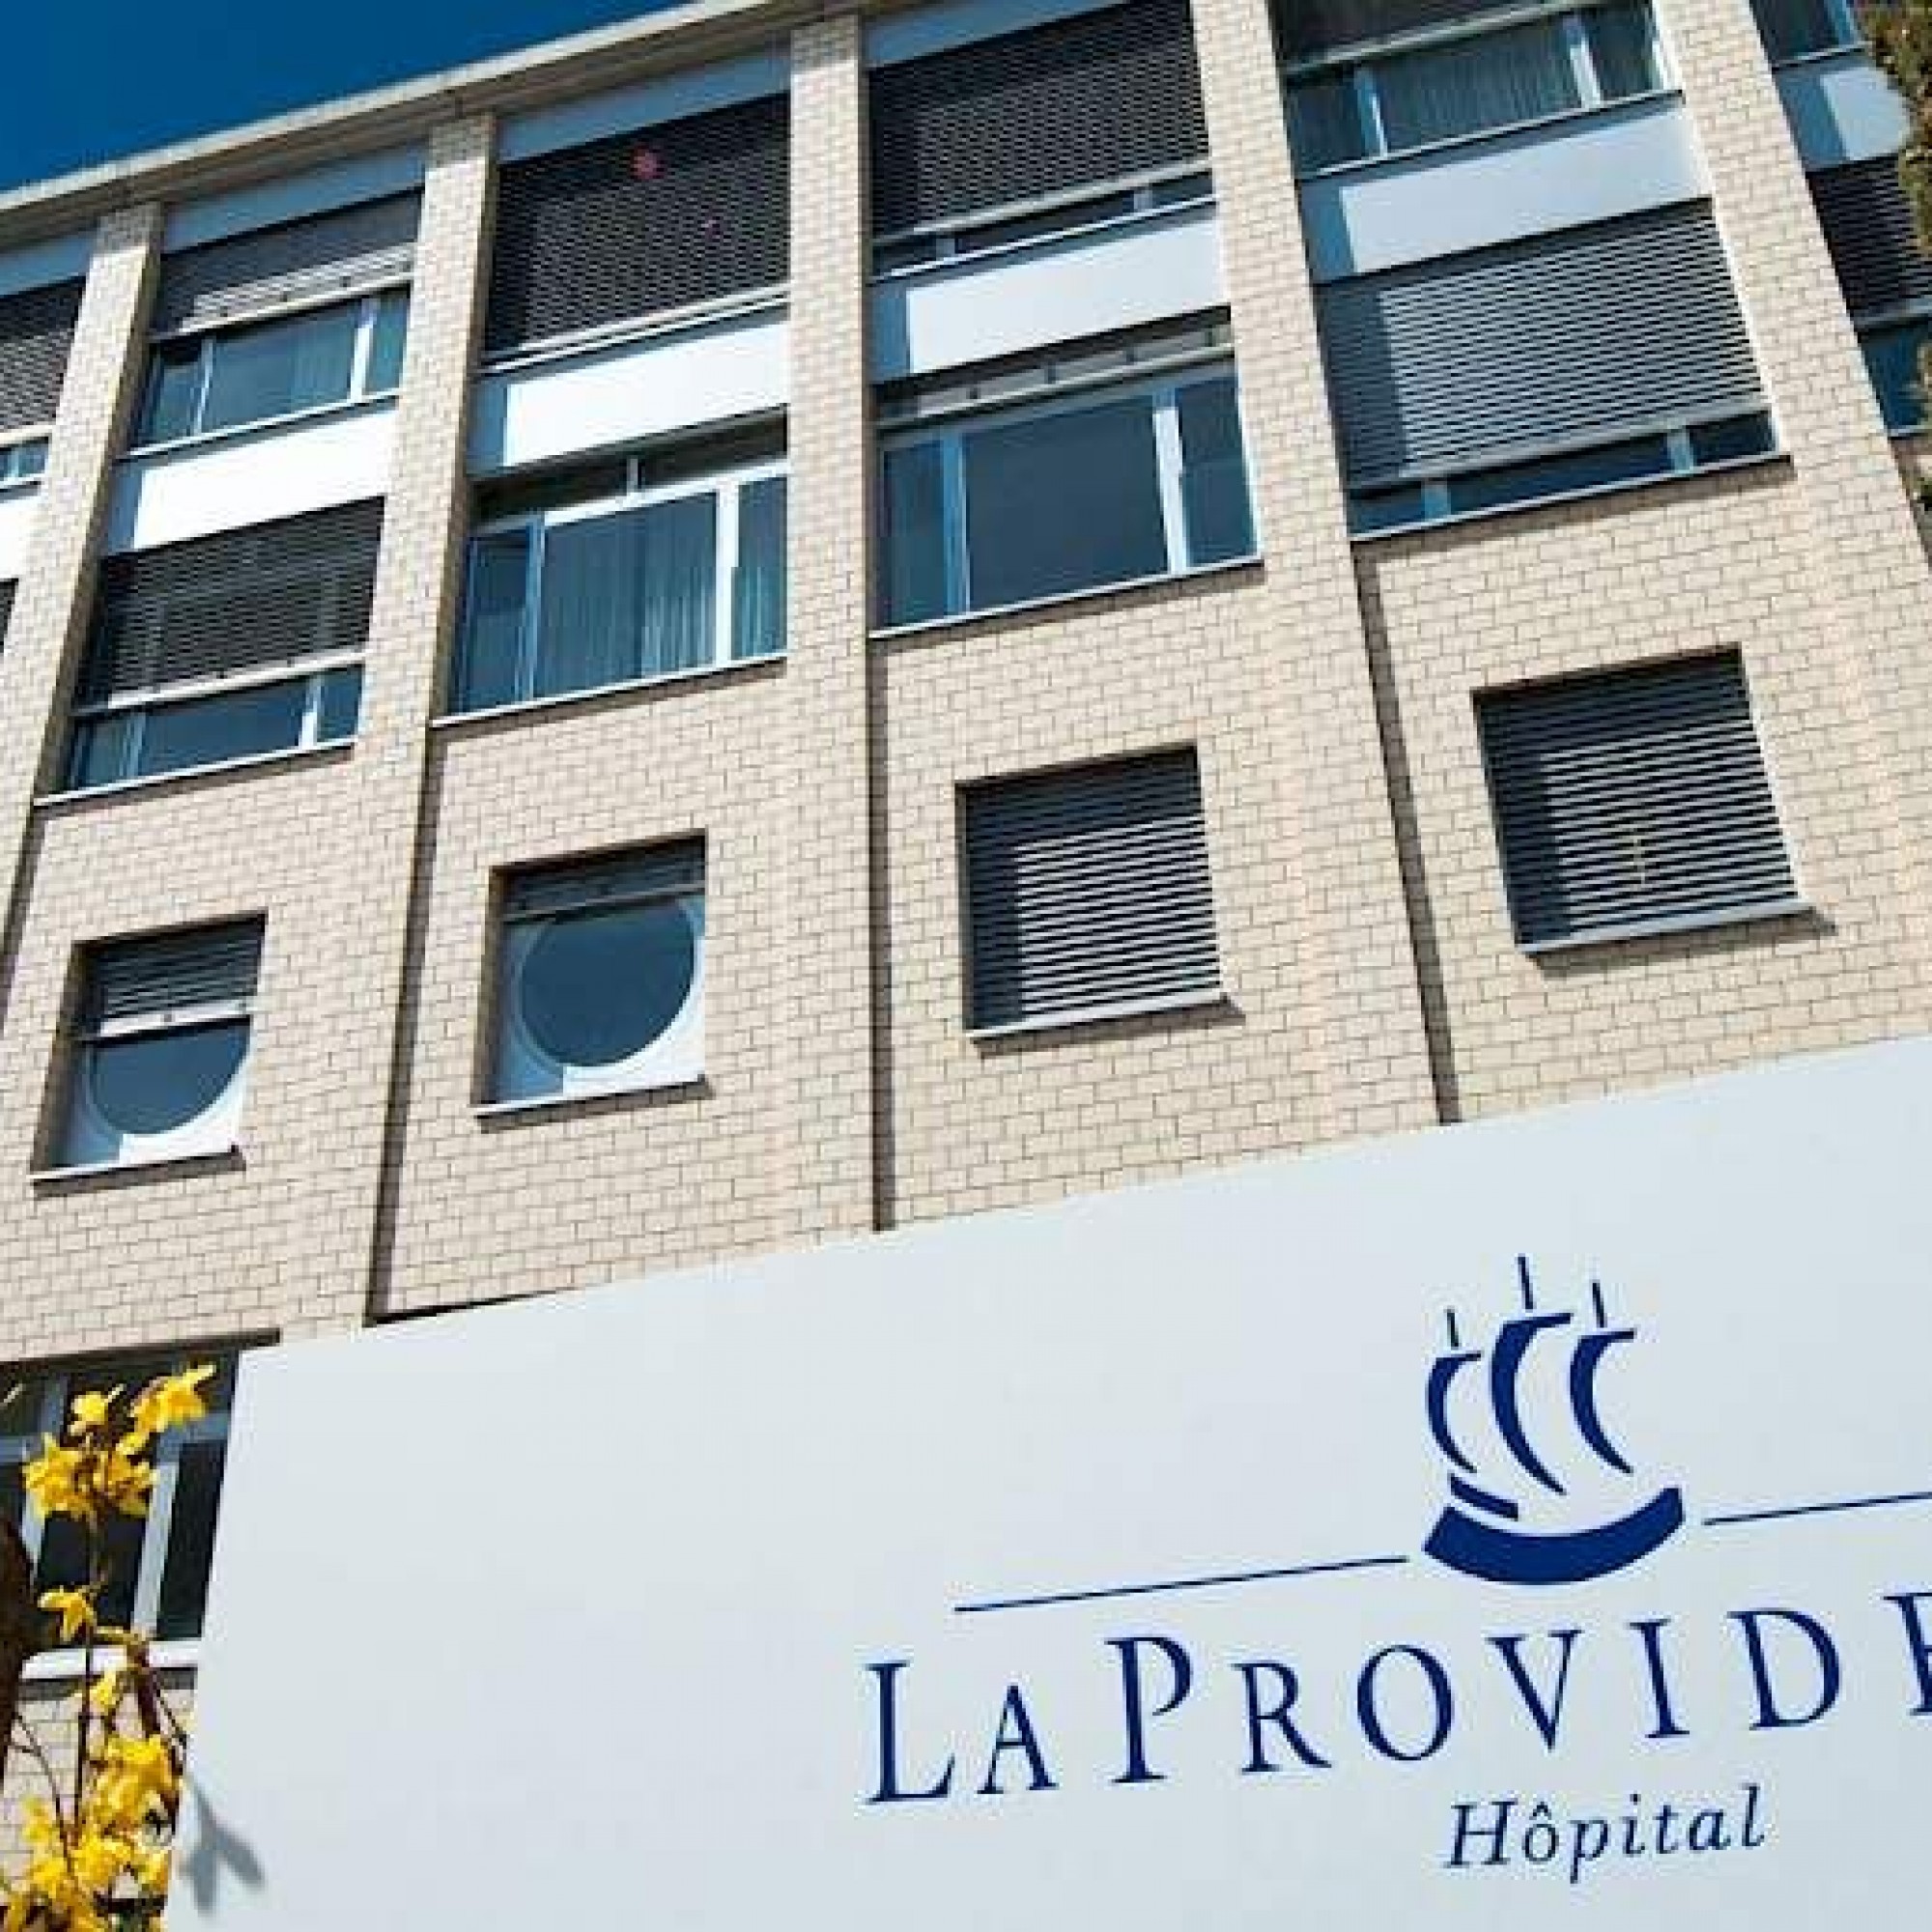 Les activités médicales de la Providence à Vevey laisseront la place à un projet immobilier dès 2022.